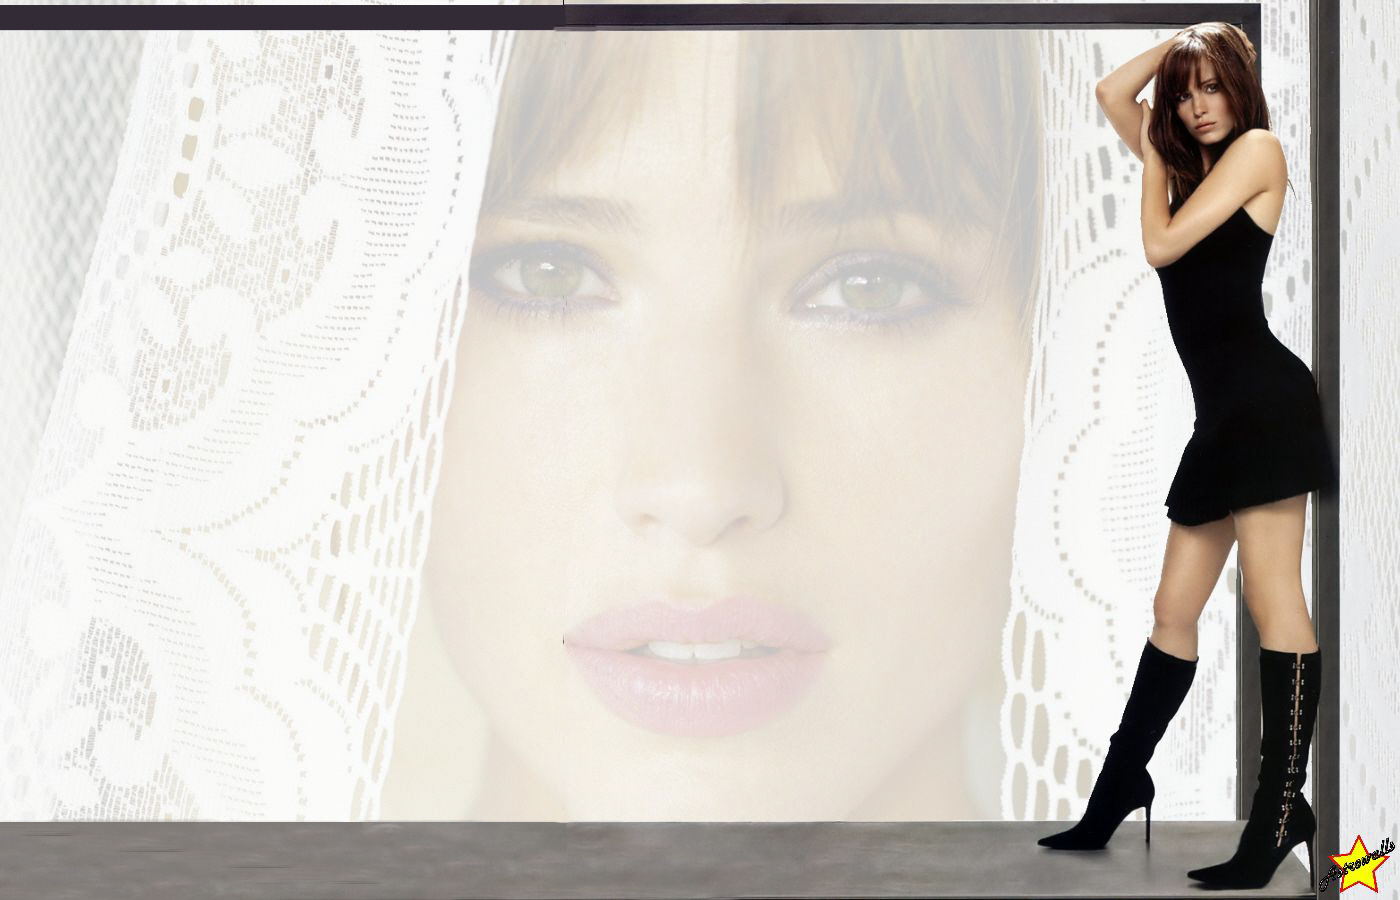 Free download wallpaper Celebrity, Jennifer Garner on your PC desktop